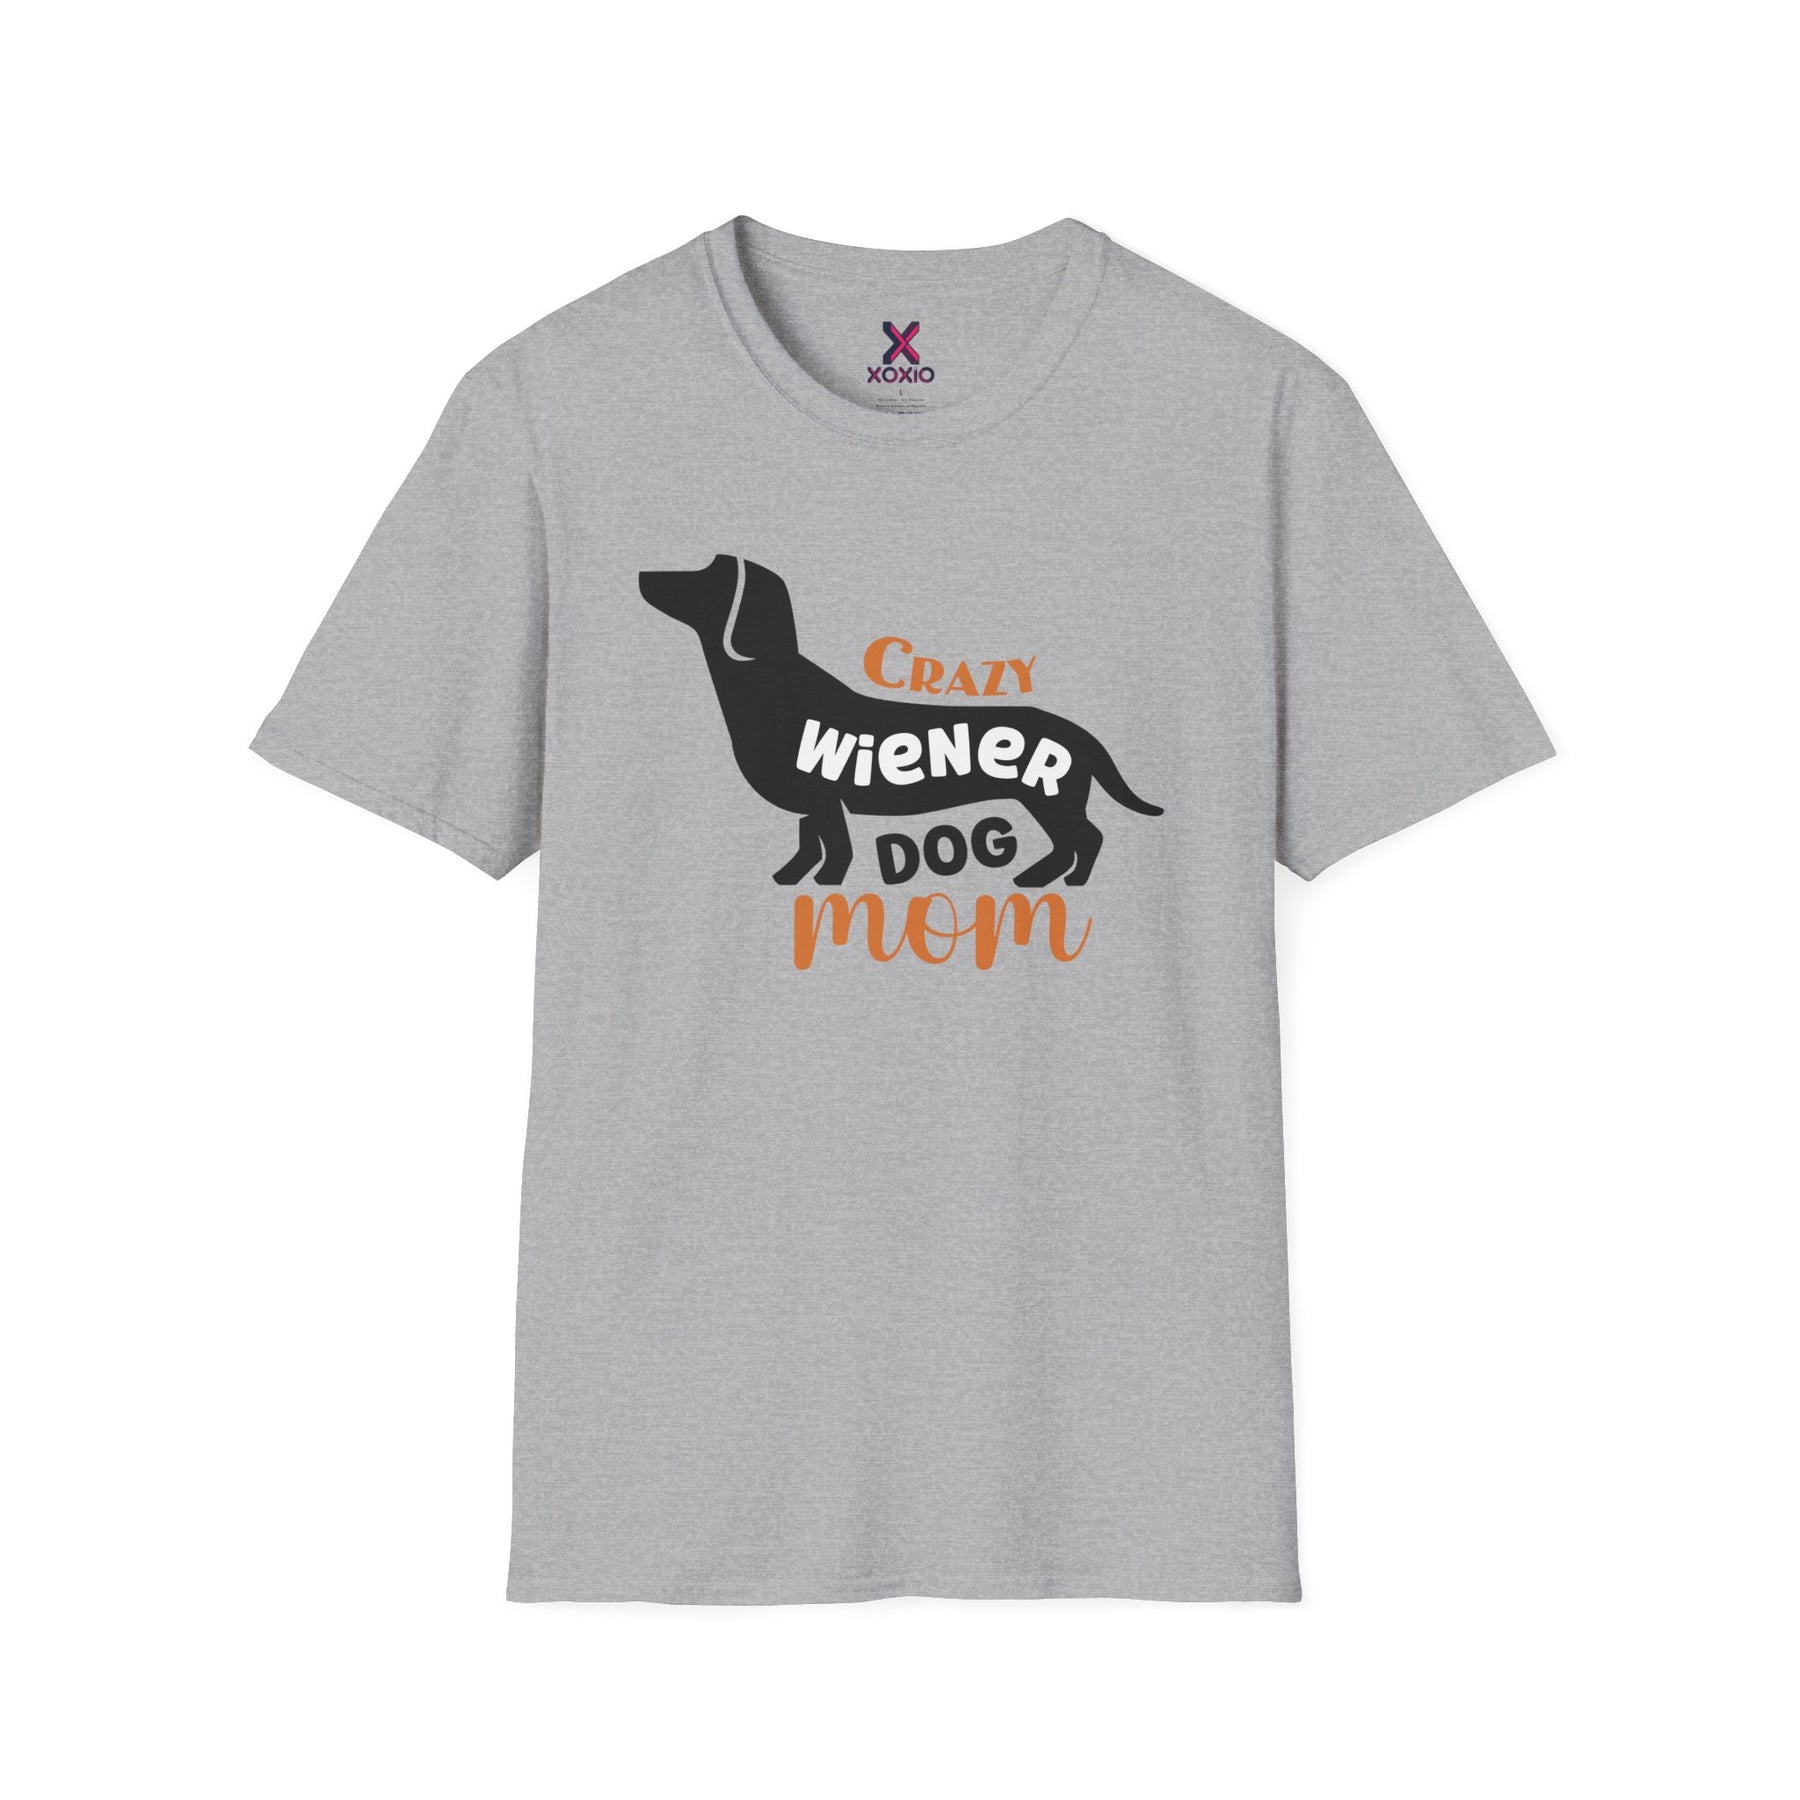 Dachshund T-shirt / Dachshund Dog T-shirt